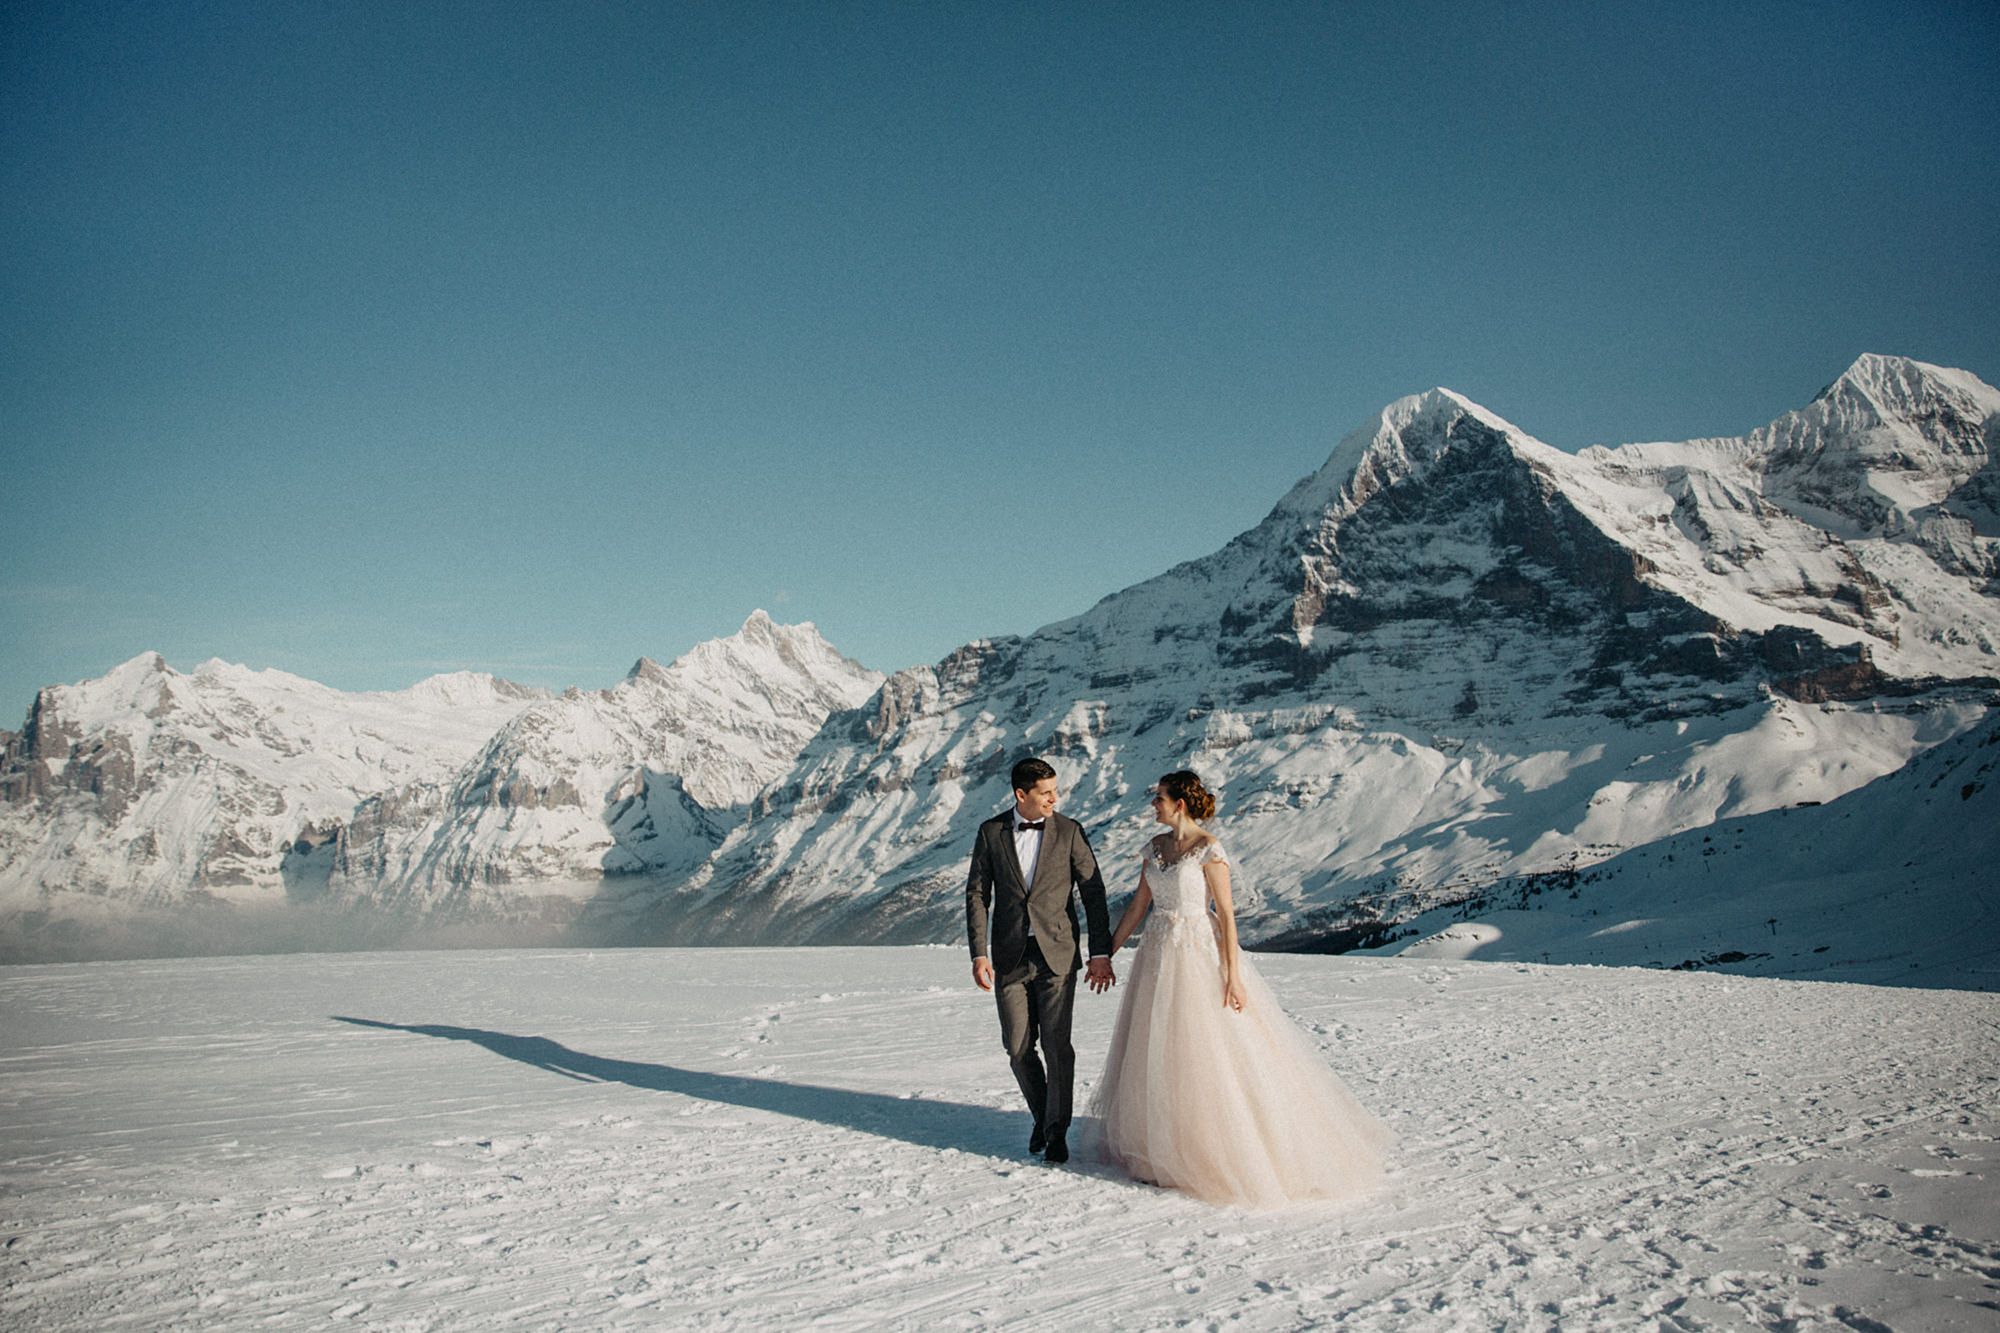 A winter wedding in switzerland from wearethewanderers